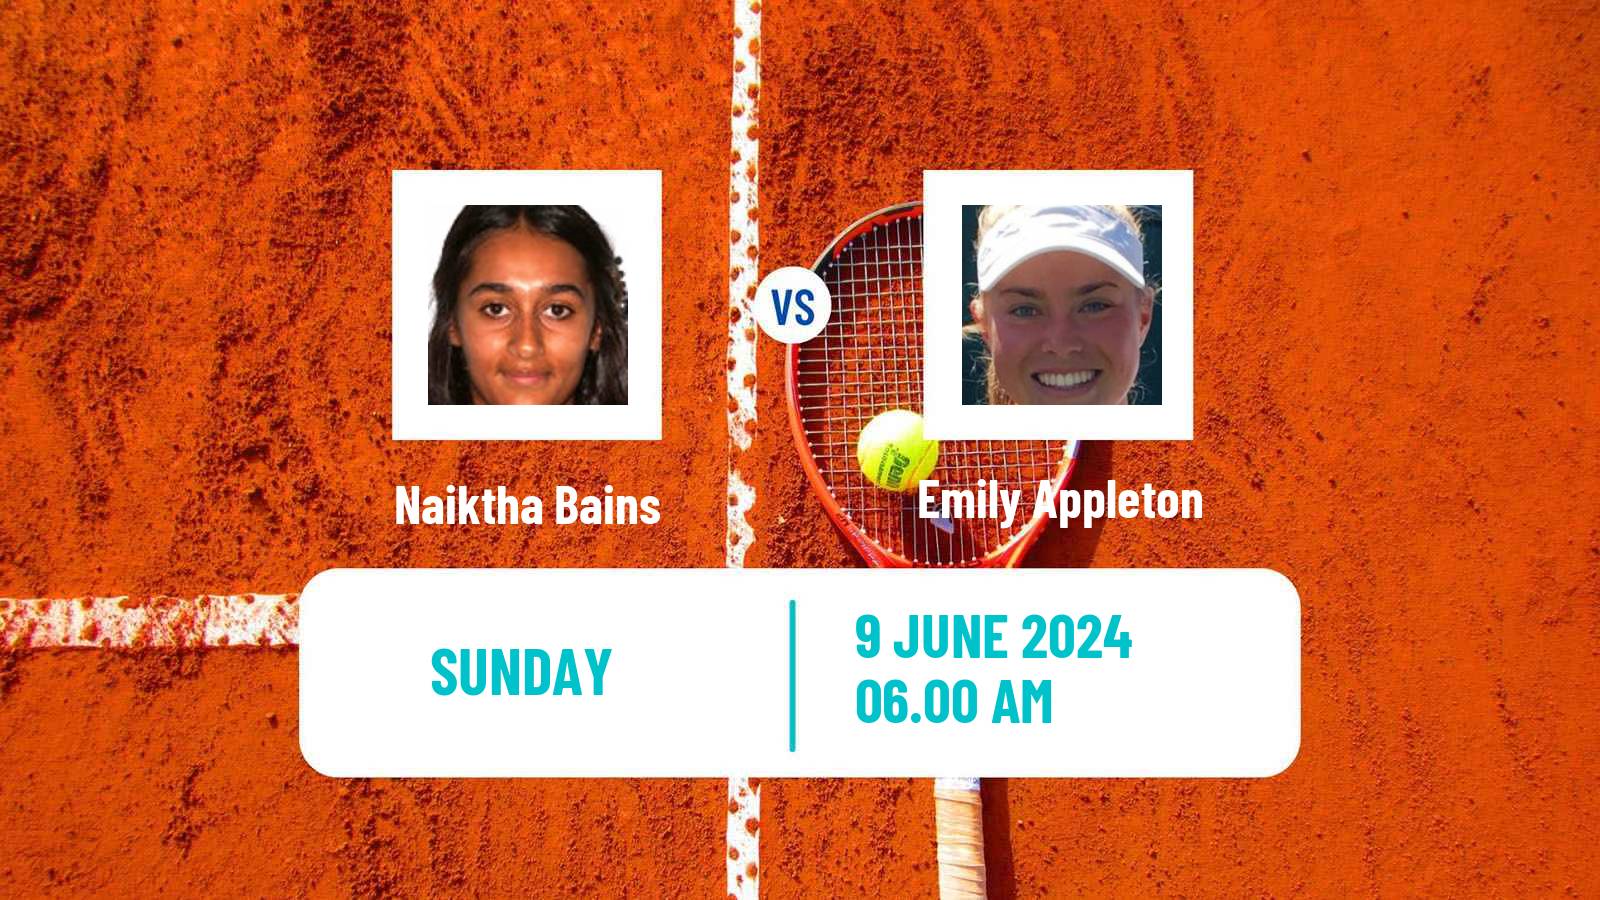 Tennis WTA Nottingham Naiktha Bains - Emily Appleton